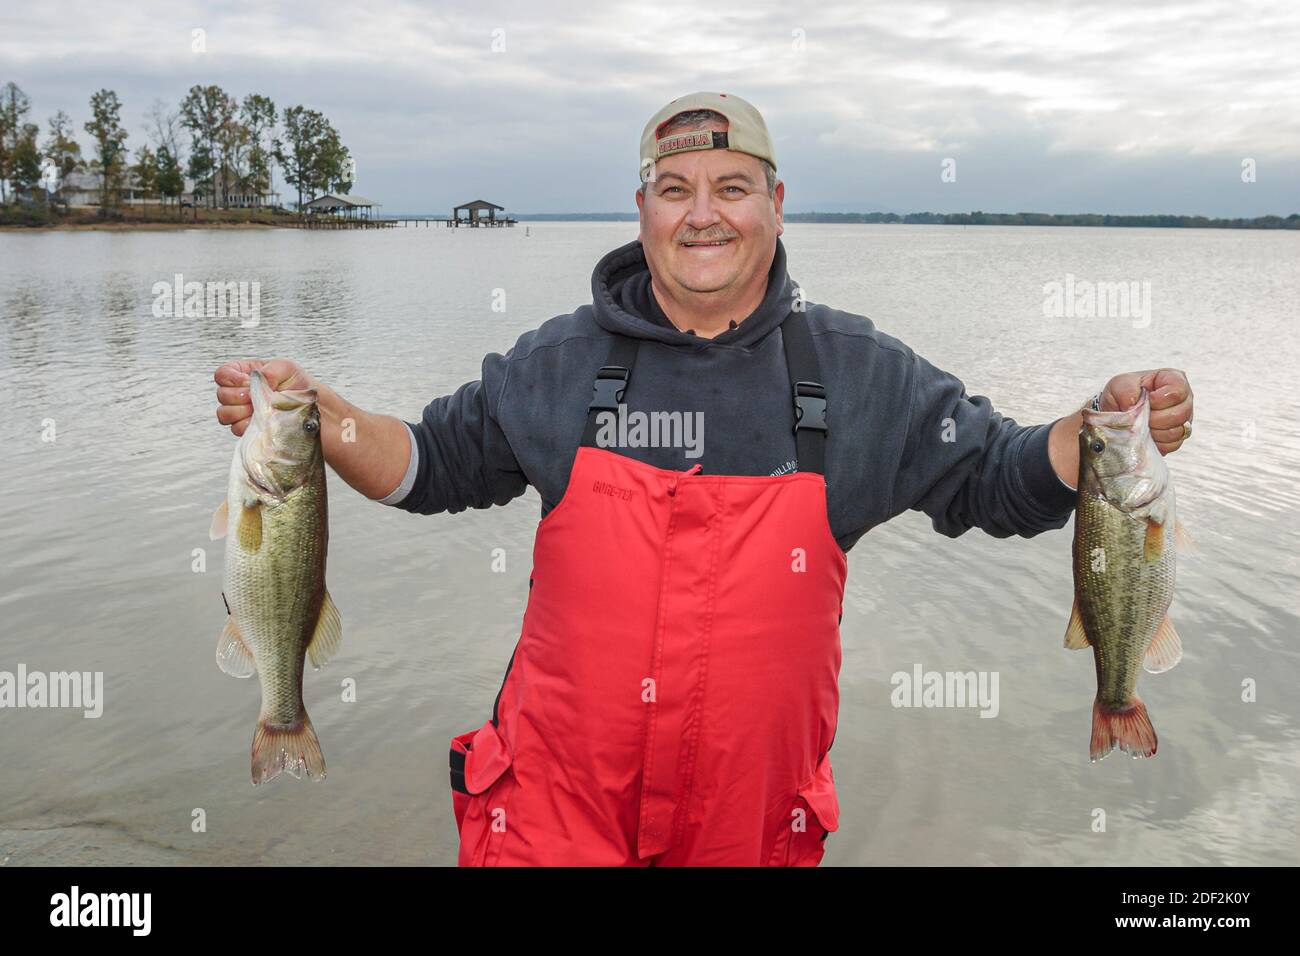 Alabama Cedar Bluffs Weiss Lago pescador de lubina, la pesca tiene la captura de peces, Foto de stock